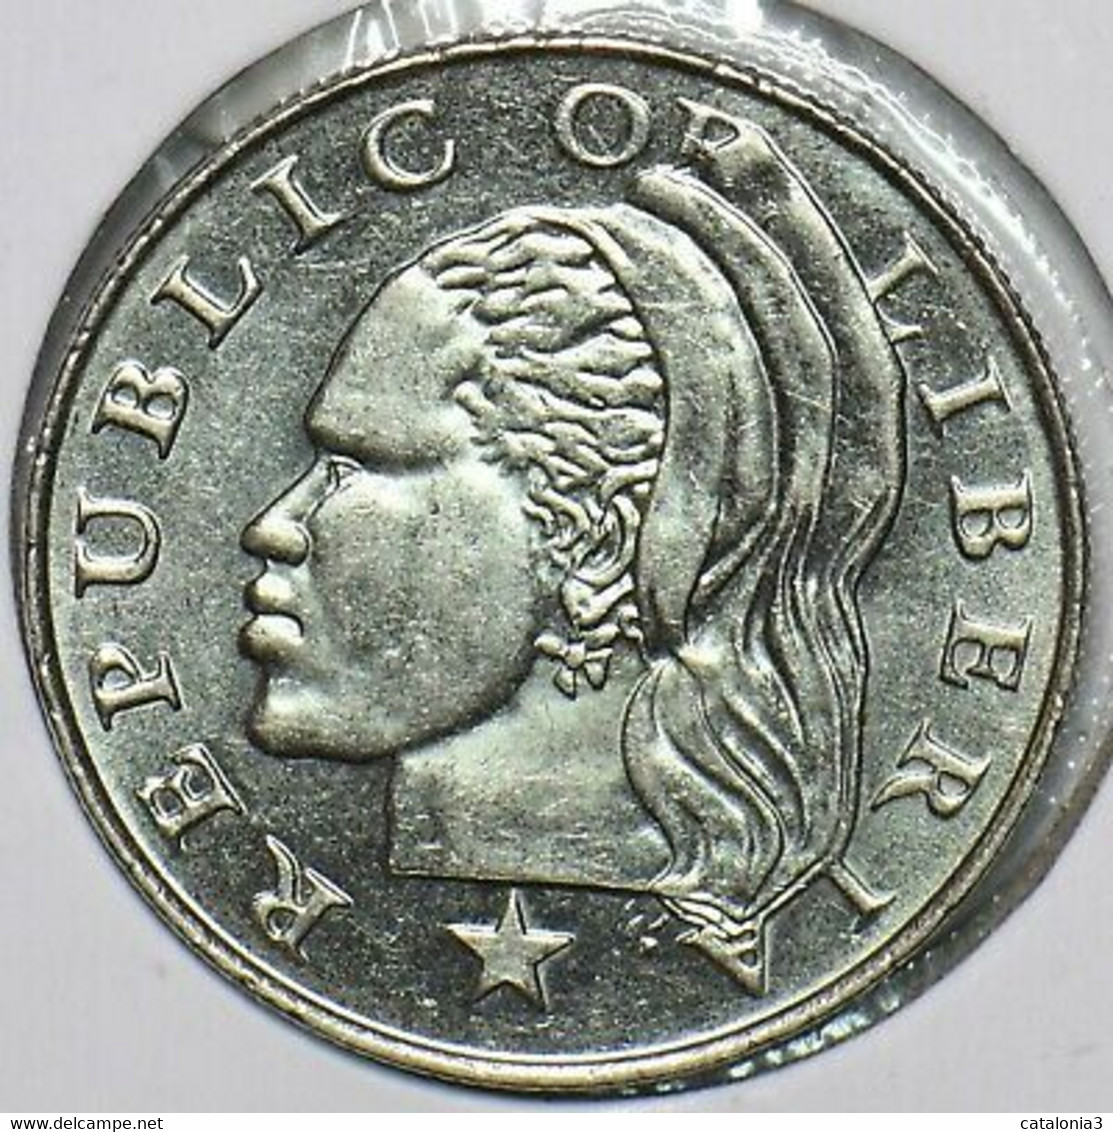 LIBERIA - 25 Cents 2000 - Liberia